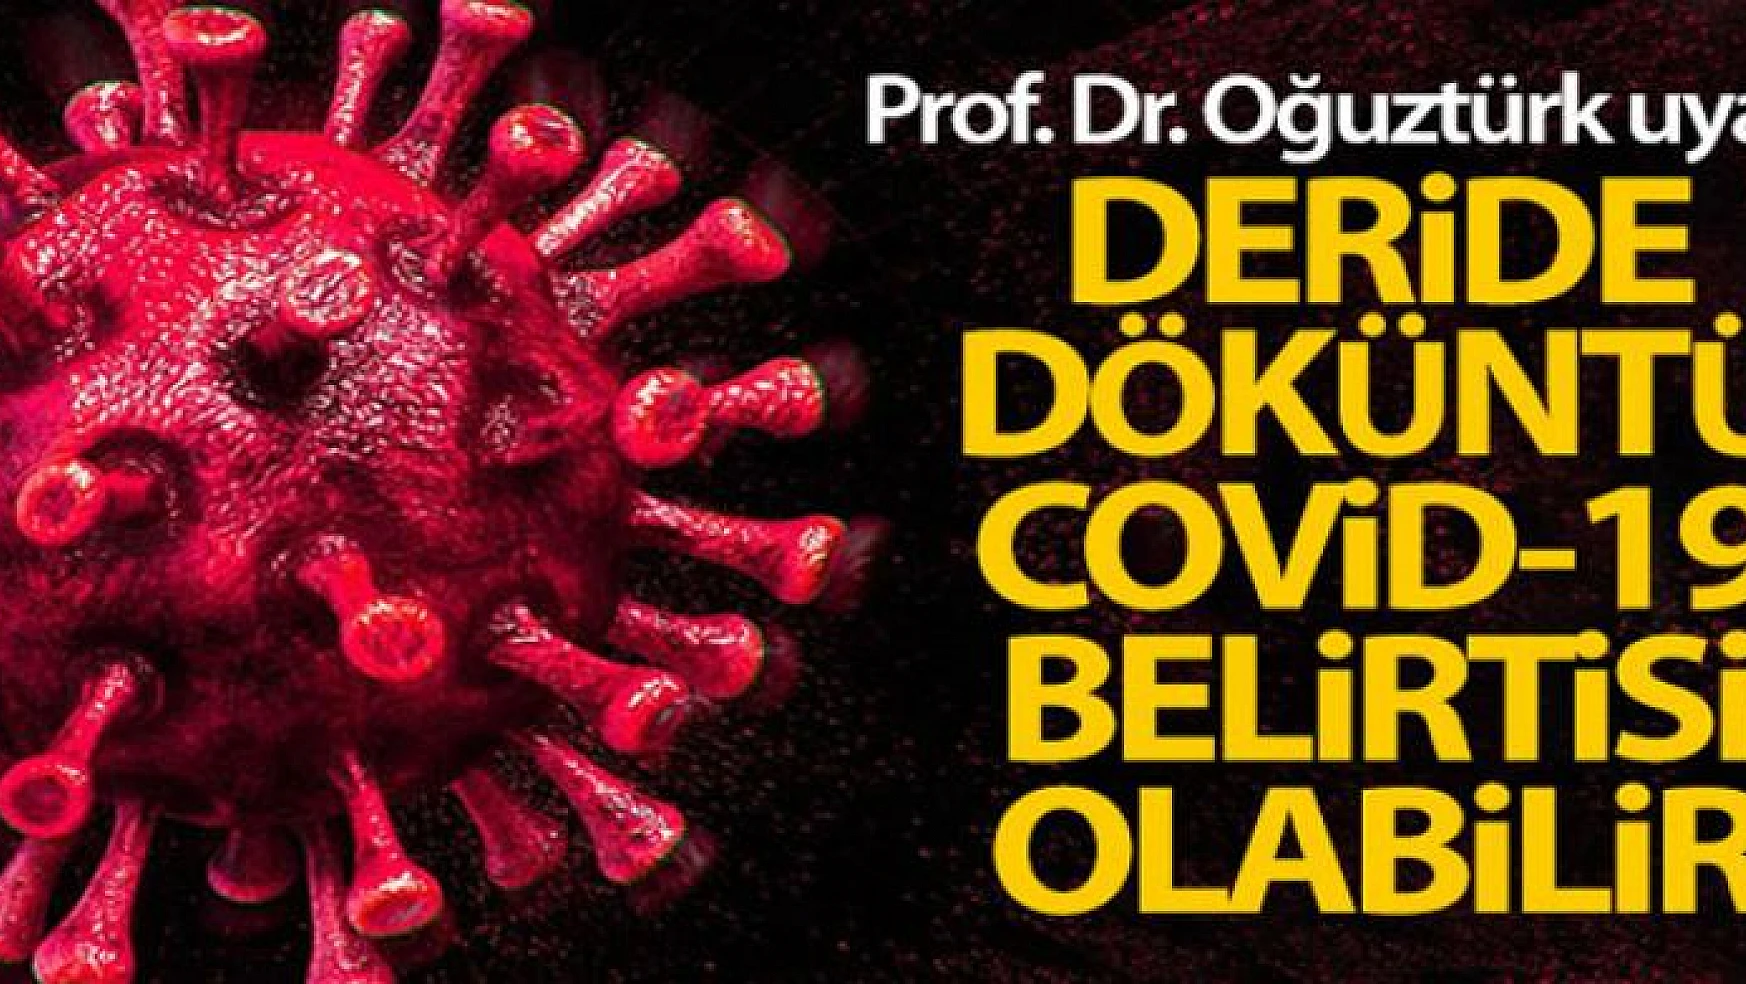 Prof. Dr. Oğuztürk uyardı: 'Deride döküntü Covid-19 belirtisi olabilir'